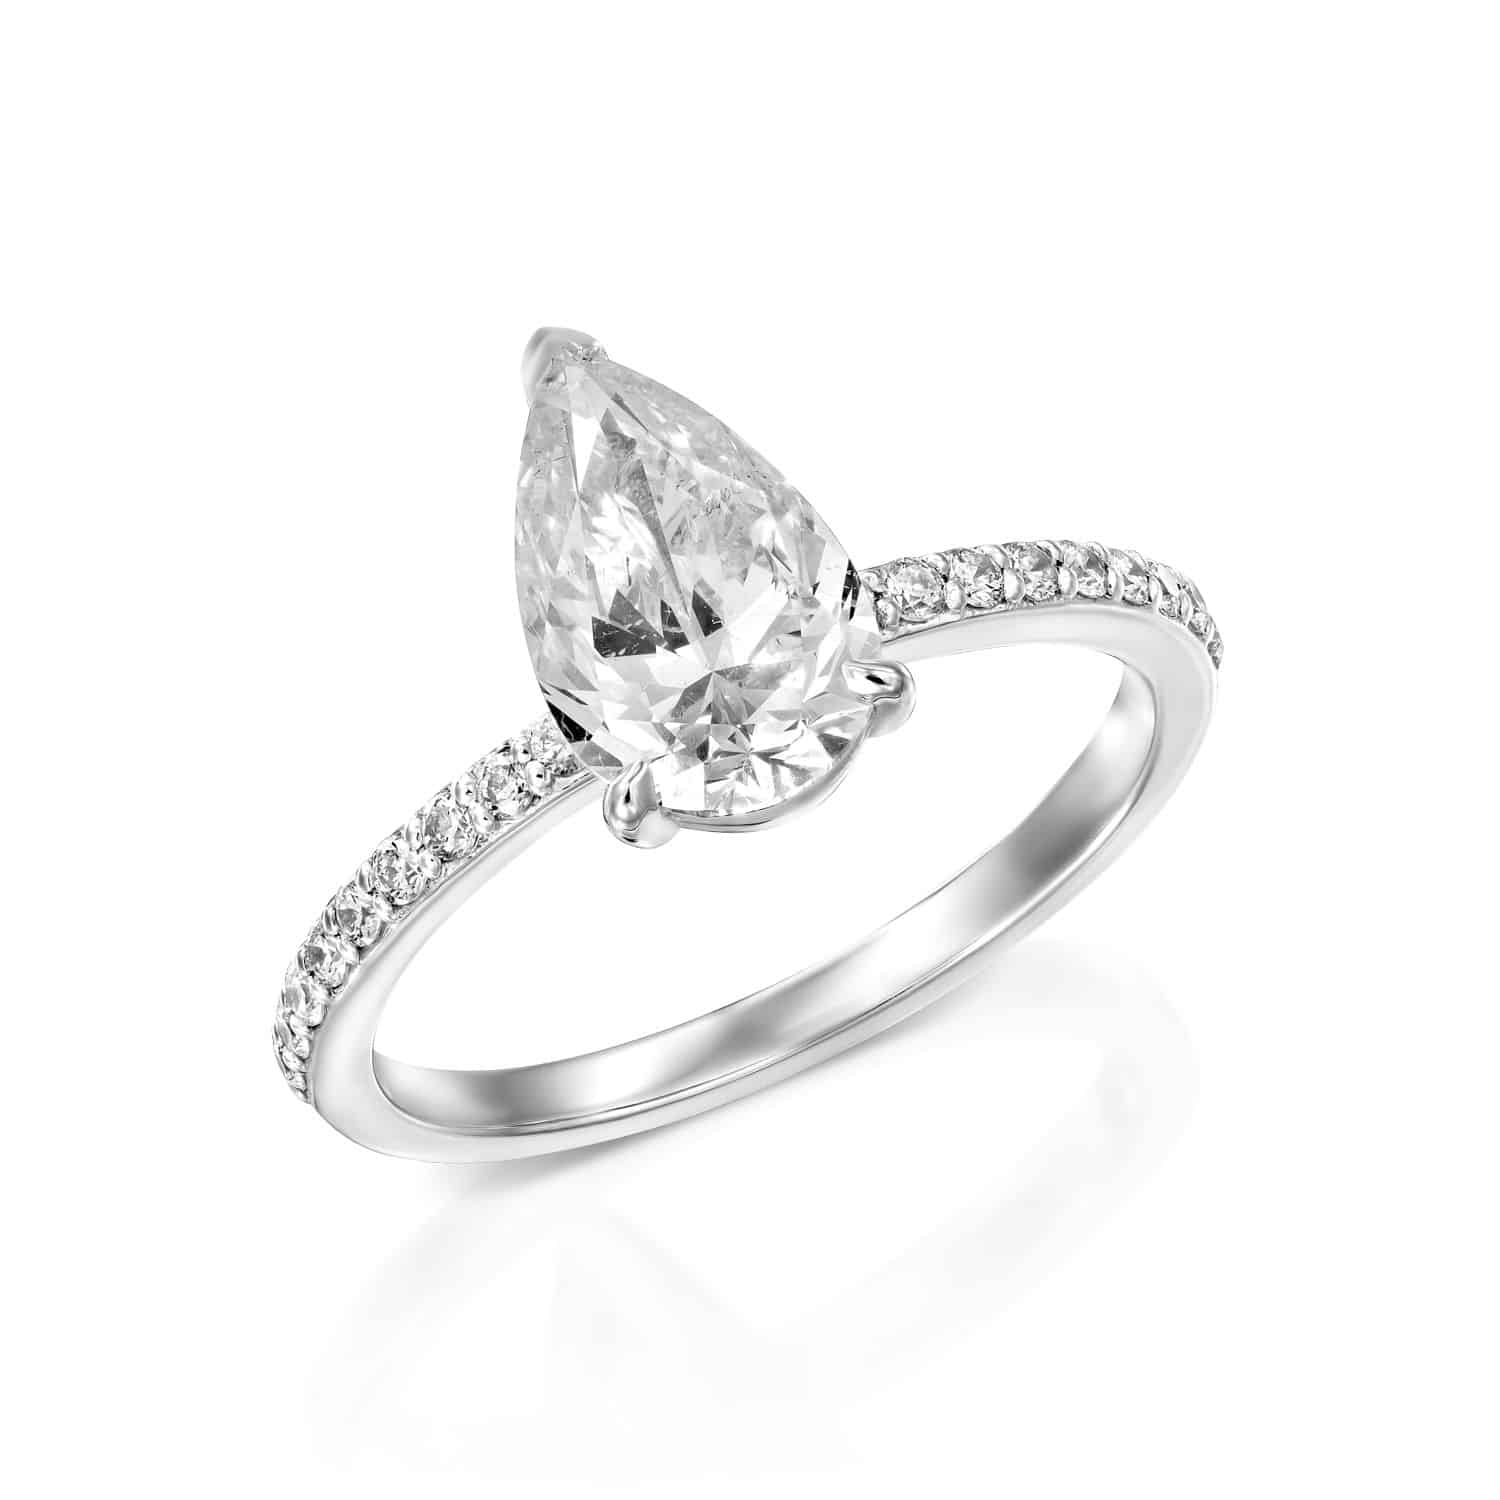 טבעת אירוסין אלגנטית של יהלום בצורת אגס עם פס משובץ, מציגה זוהר מתוחכם וסגנון נצחי.